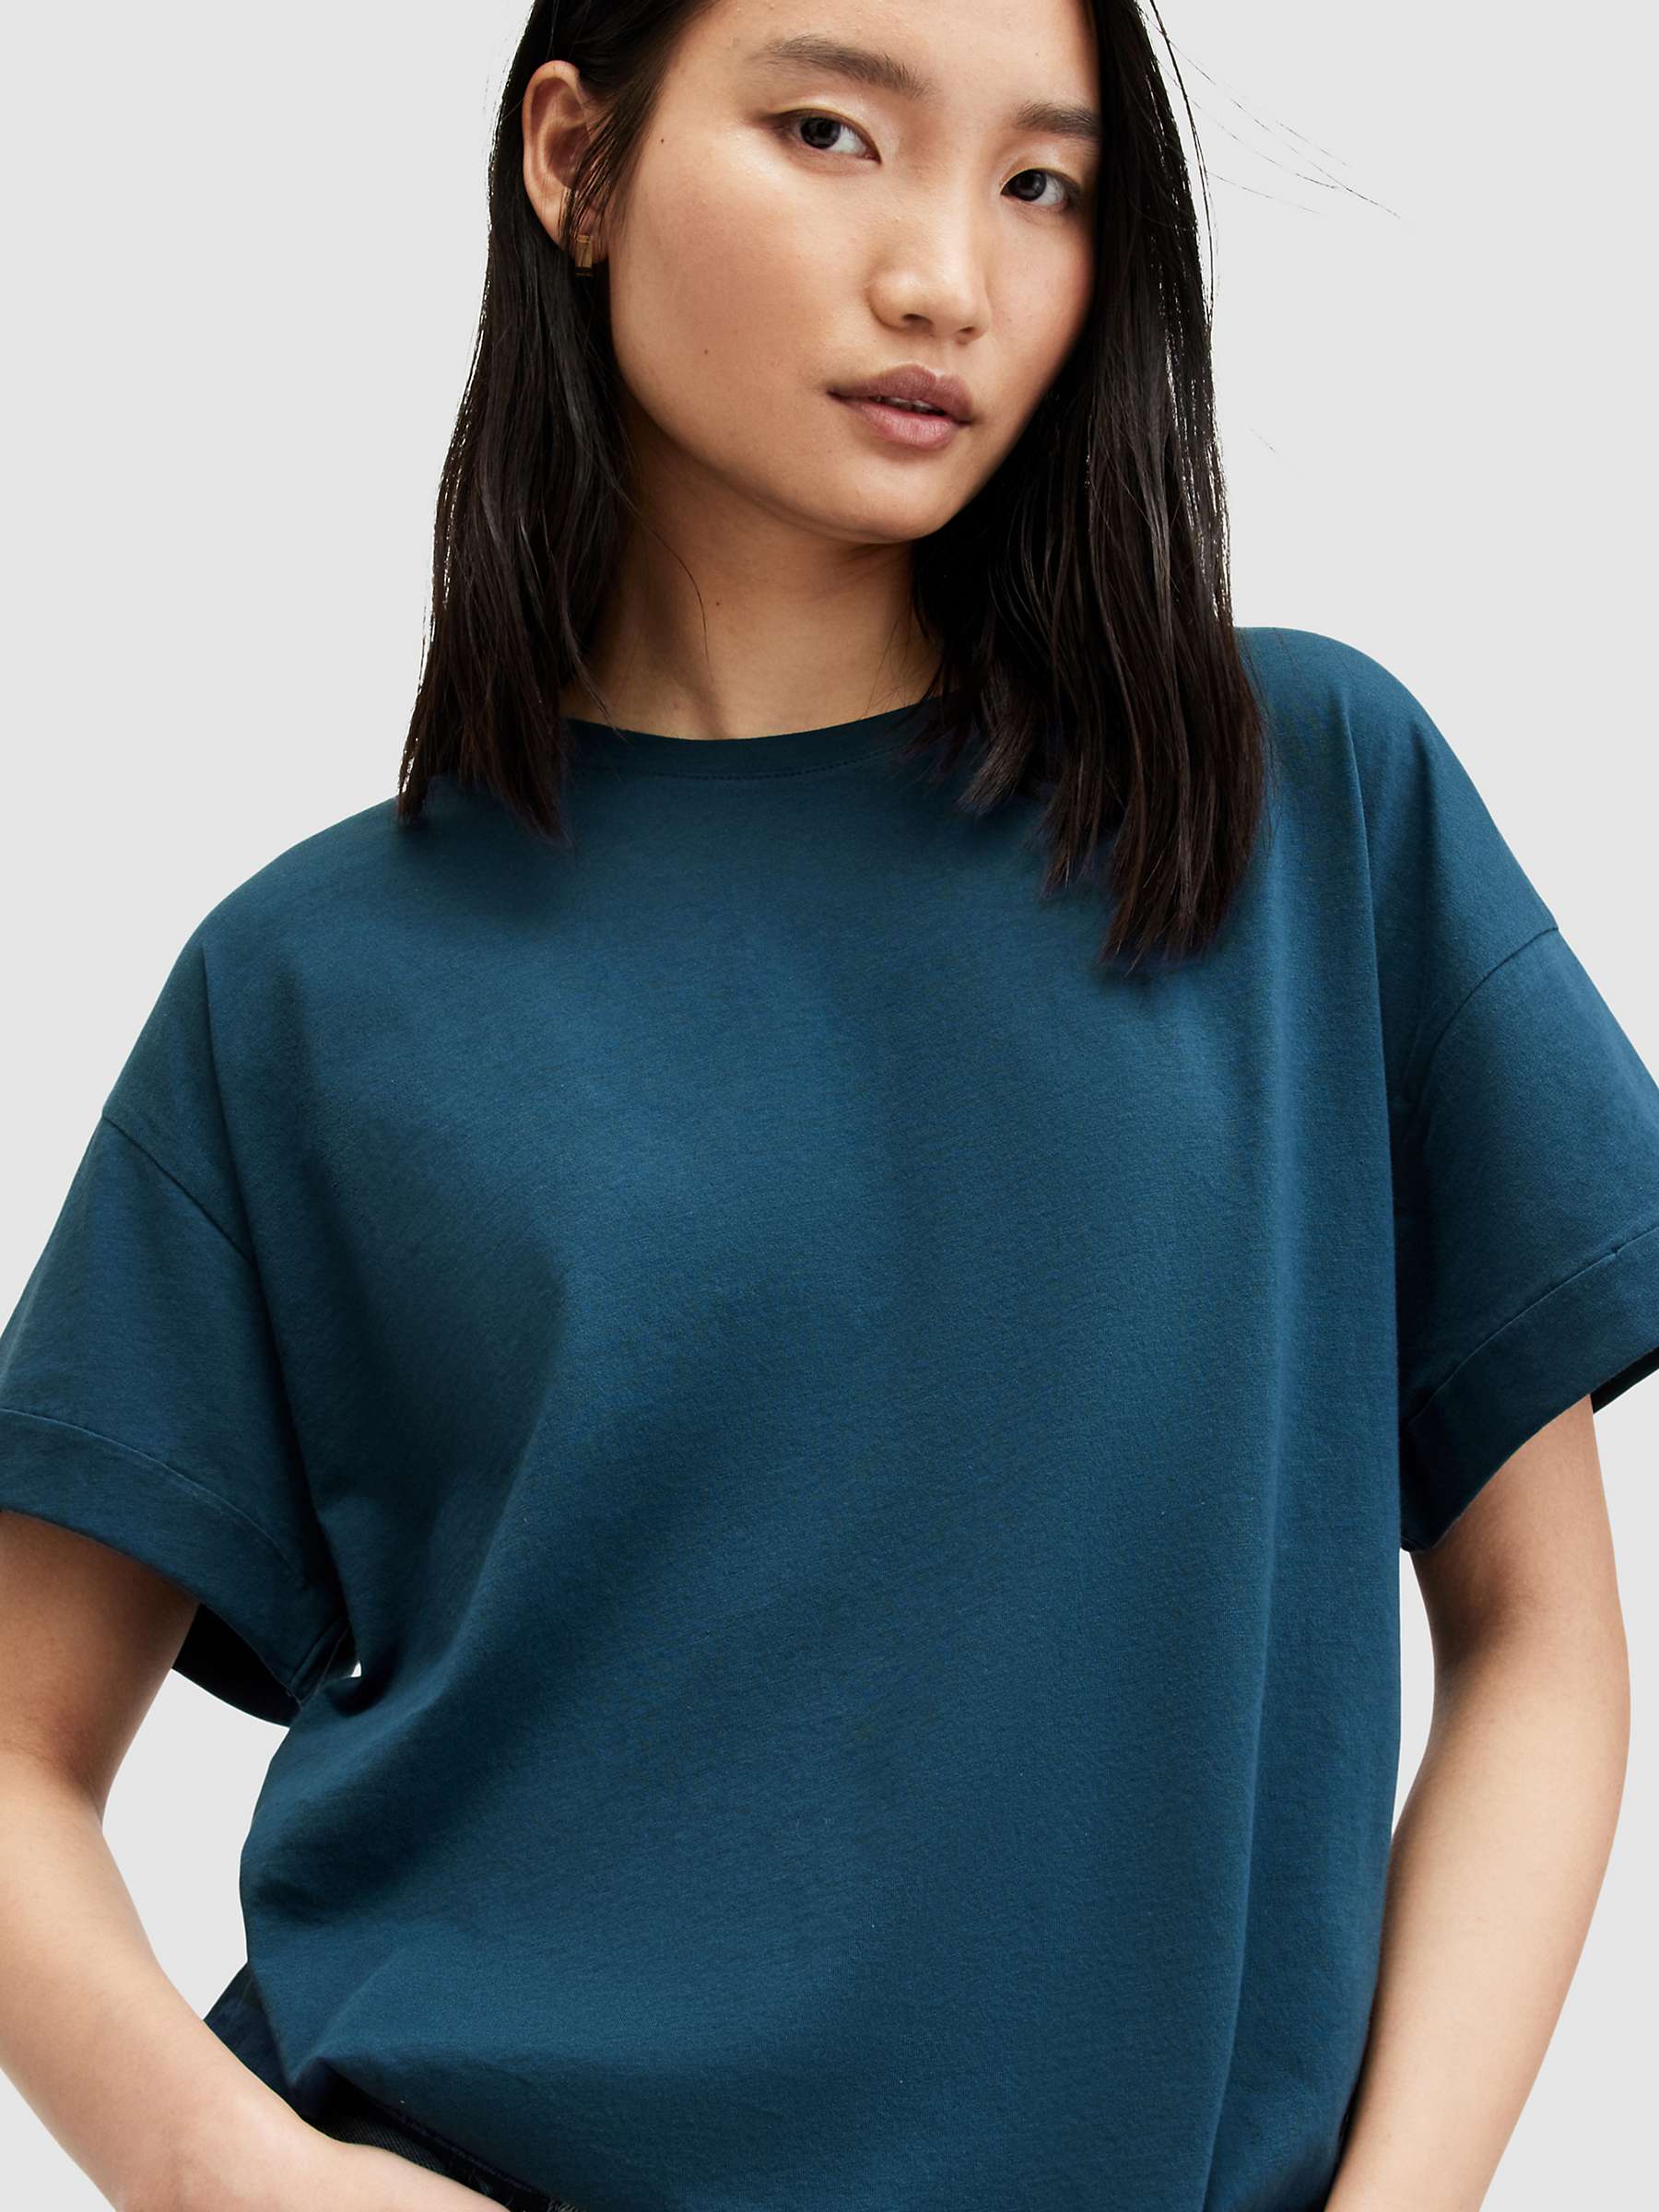 Buy AllSaints Briar Plain Organic Cotton T-Shirt, Ink Blue Online at johnlewis.com